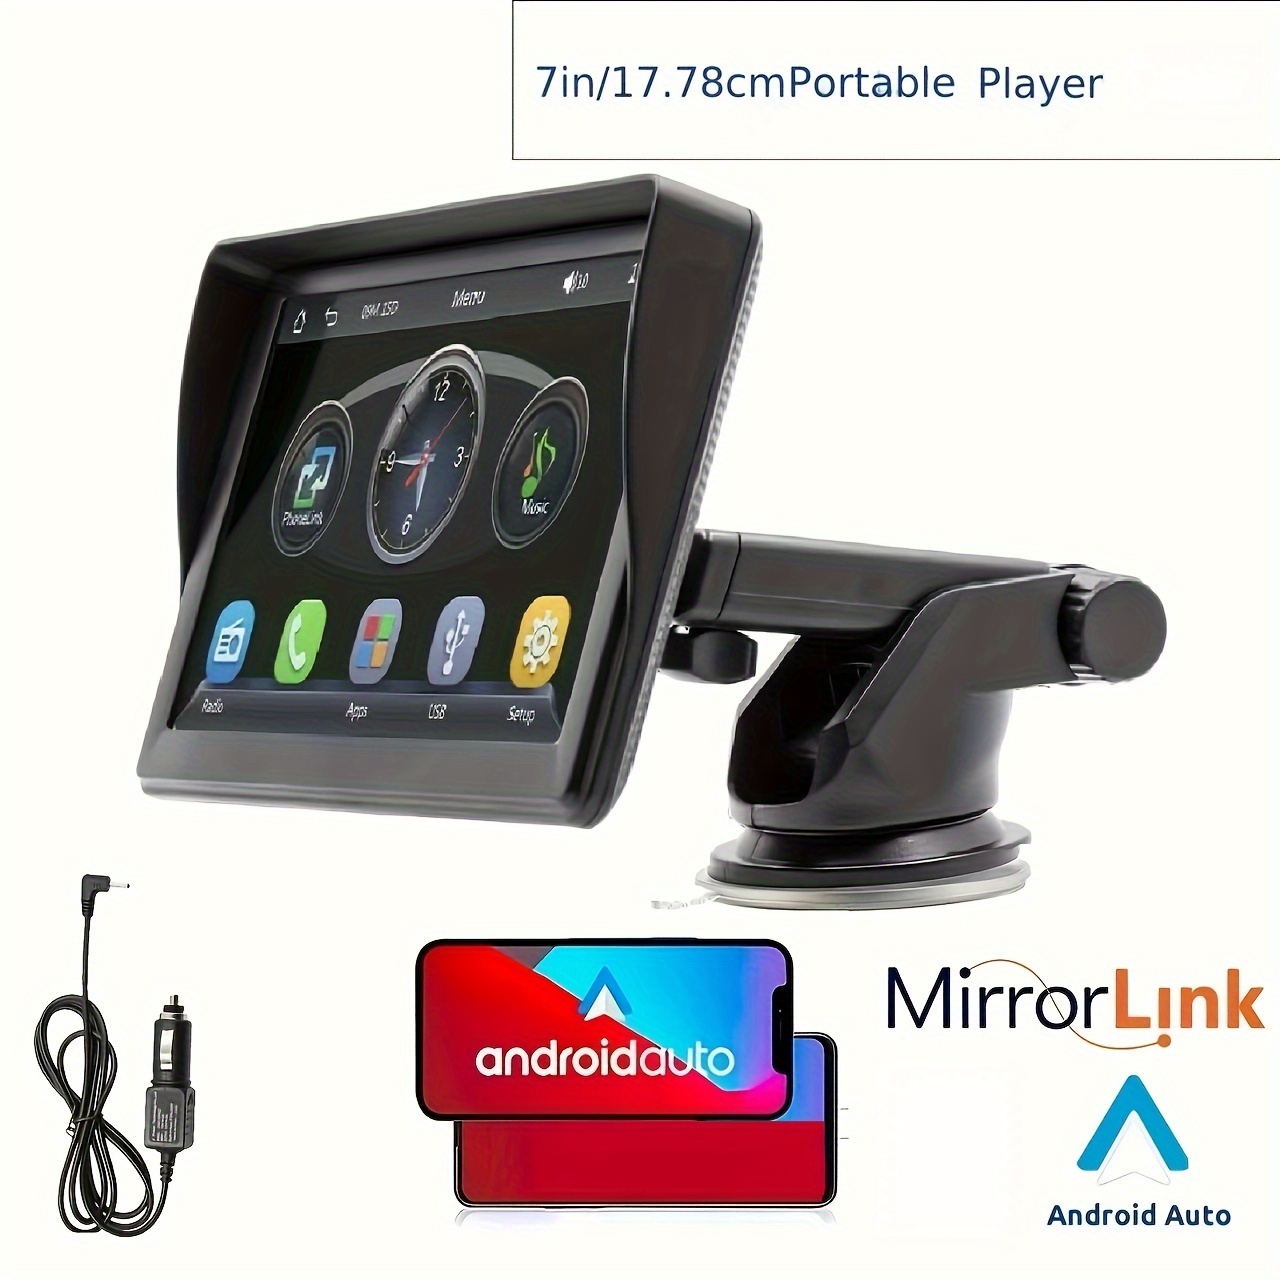 Portable Inalambrico CarPlay Pantalla Android Auto Monitor AirPlay Phone  Mirror Link for Car Bus SUV Pickup